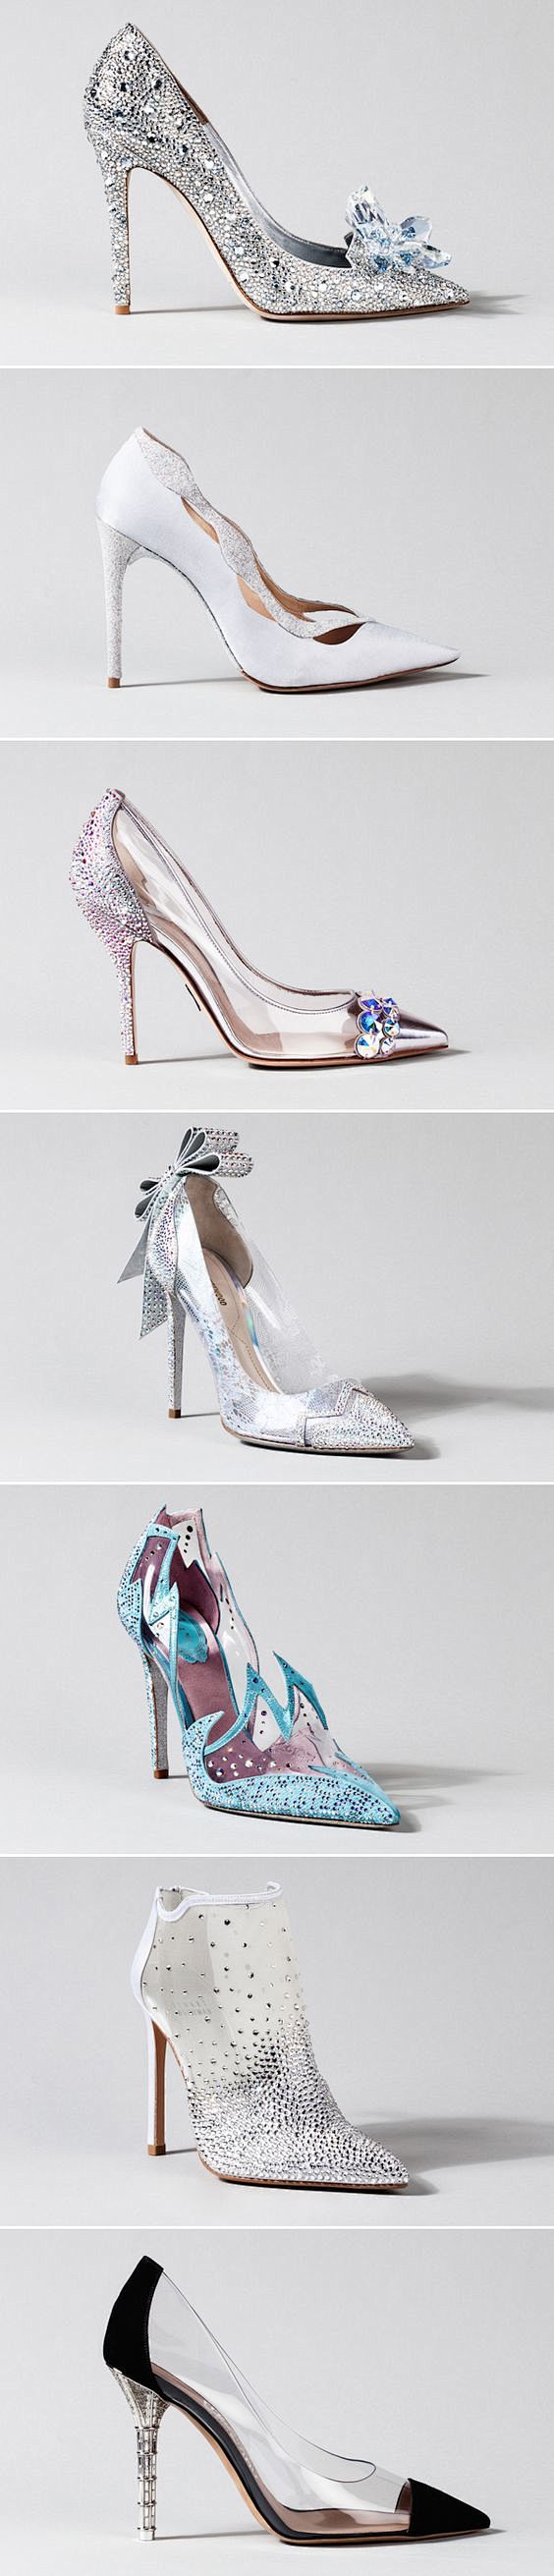 灰姑娘的水晶鞋无疑是最具标志性的“梦想鞋...